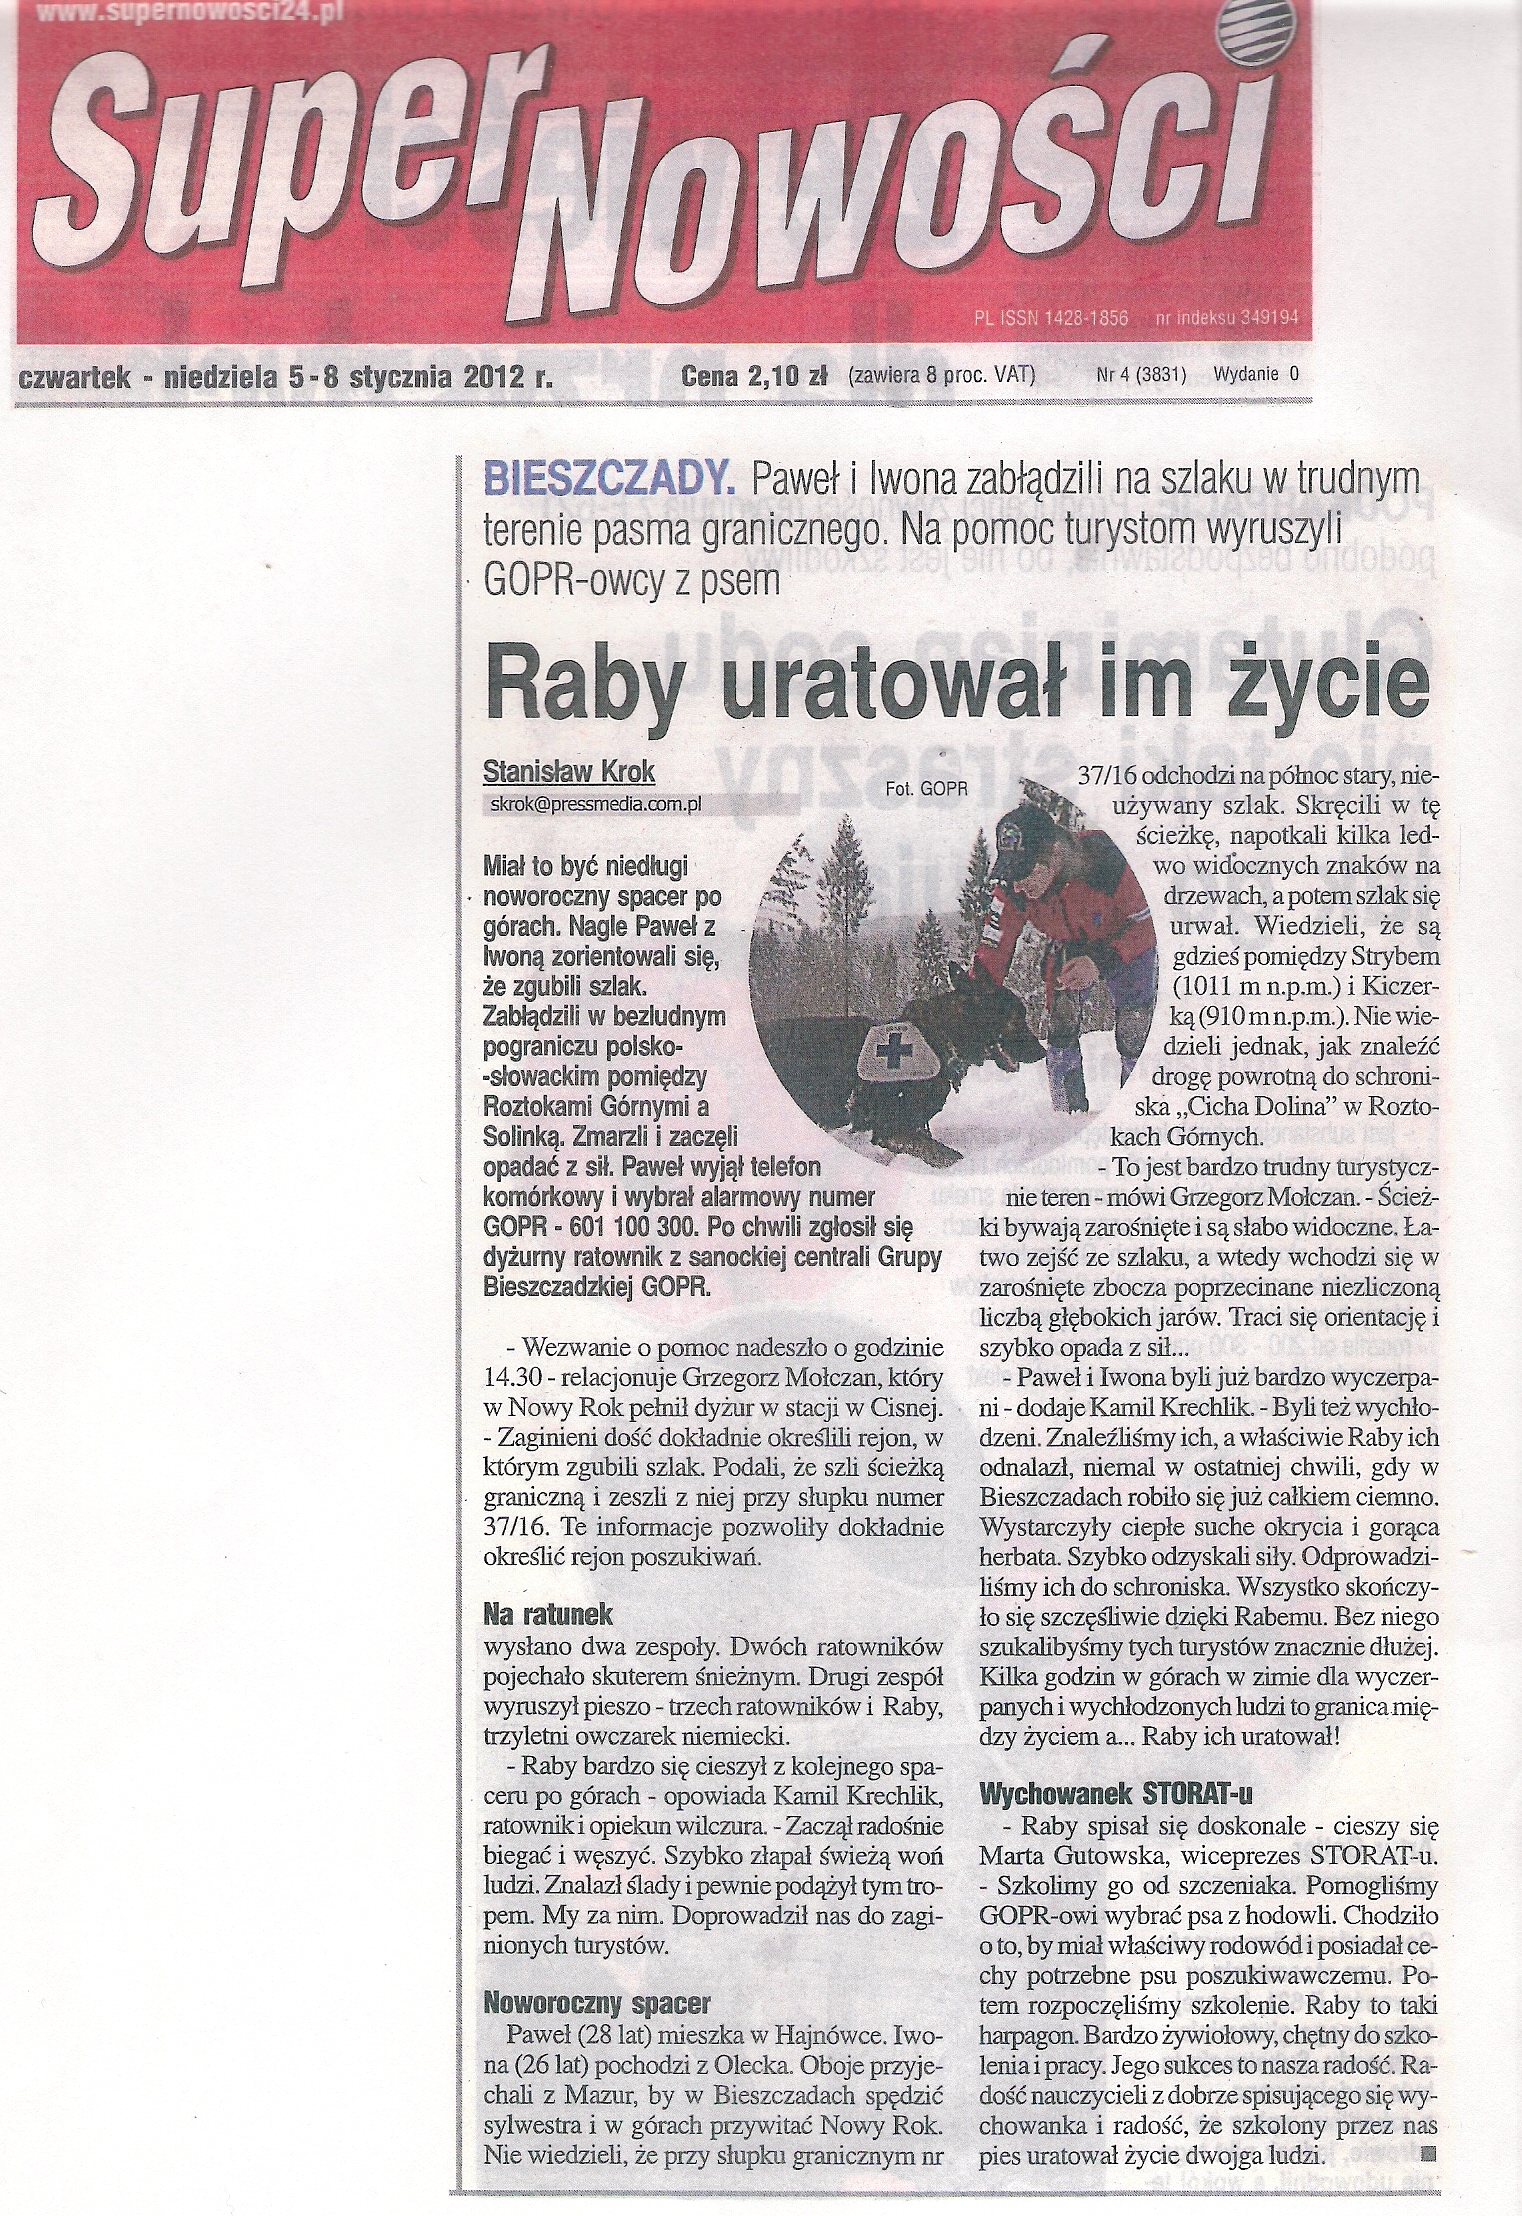 2012.01.08._raby.uratowal.im.zycie